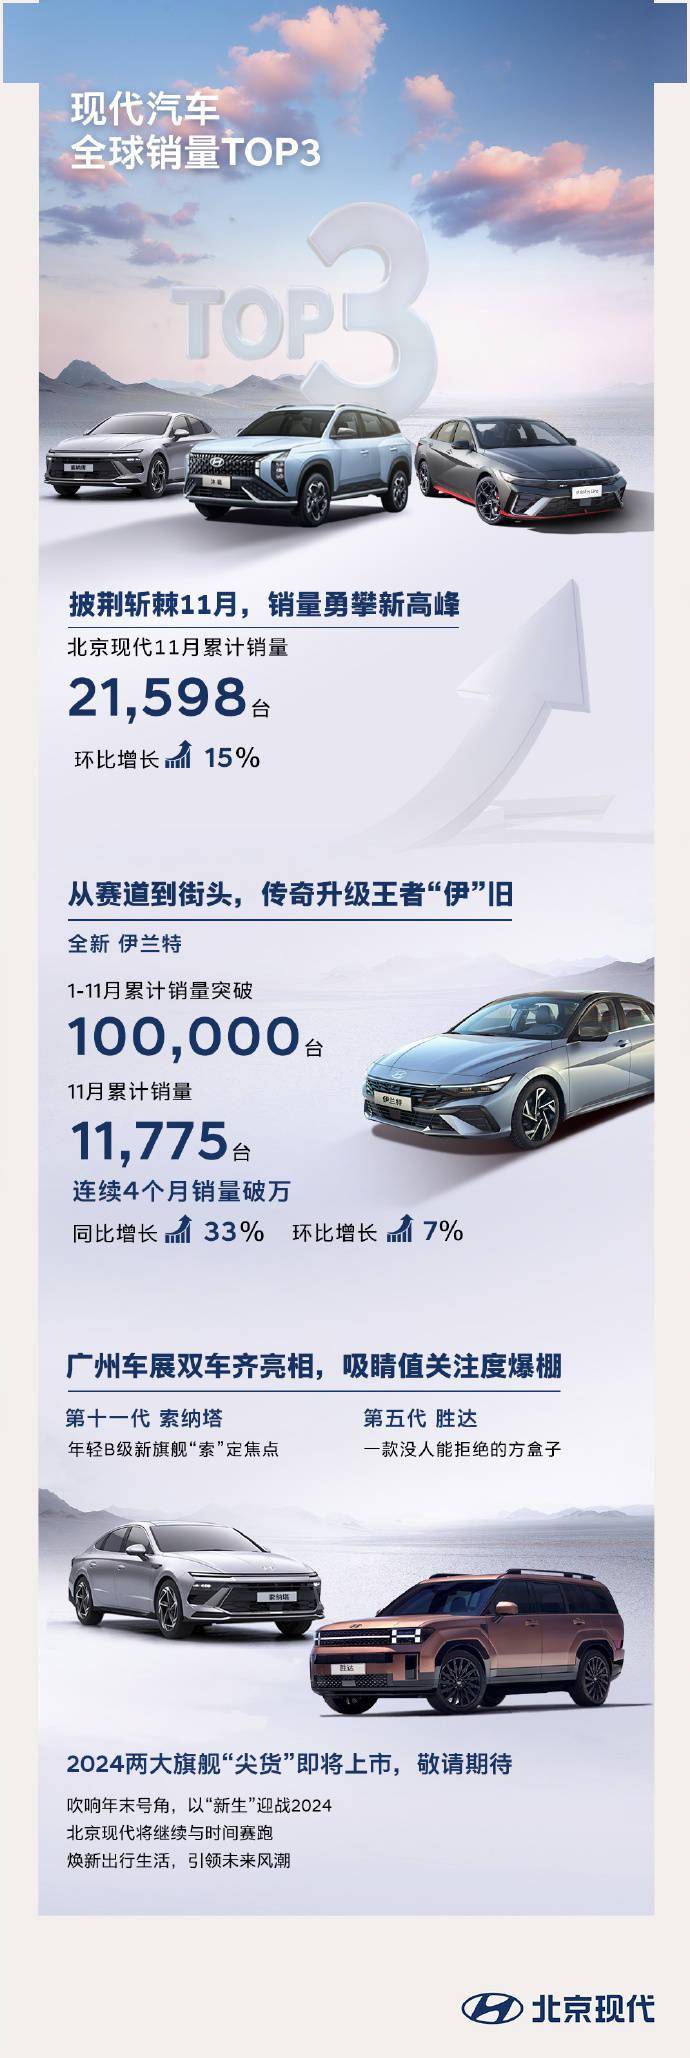  北京现代 11 月销量达 21598 台，即将推出第十一代索纳塔车型